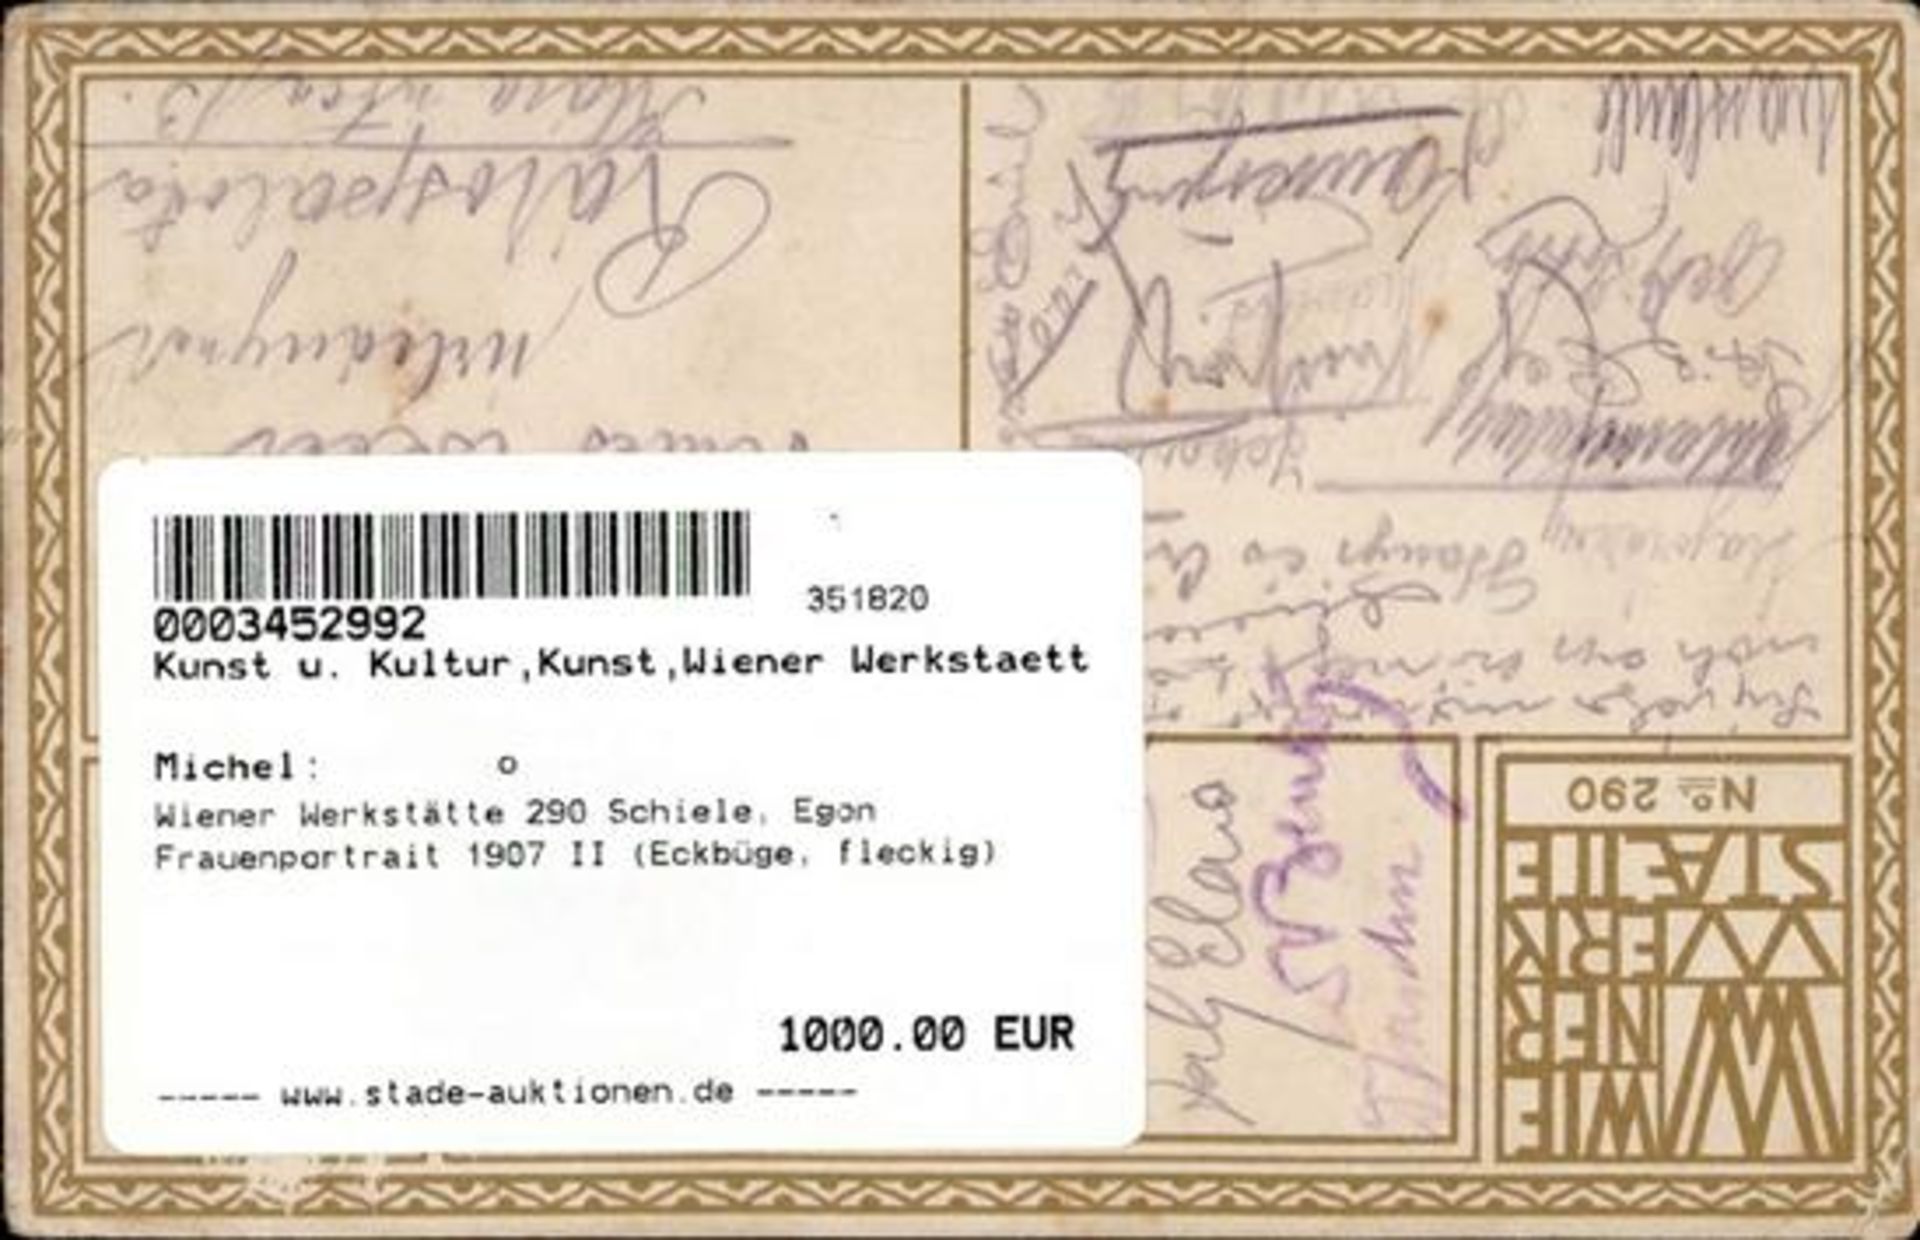 Wiener Werkstätte 290 Schiele, Egon Frauenportrait 1907 II (Eckbüge, fleckig) - Bild 2 aus 2